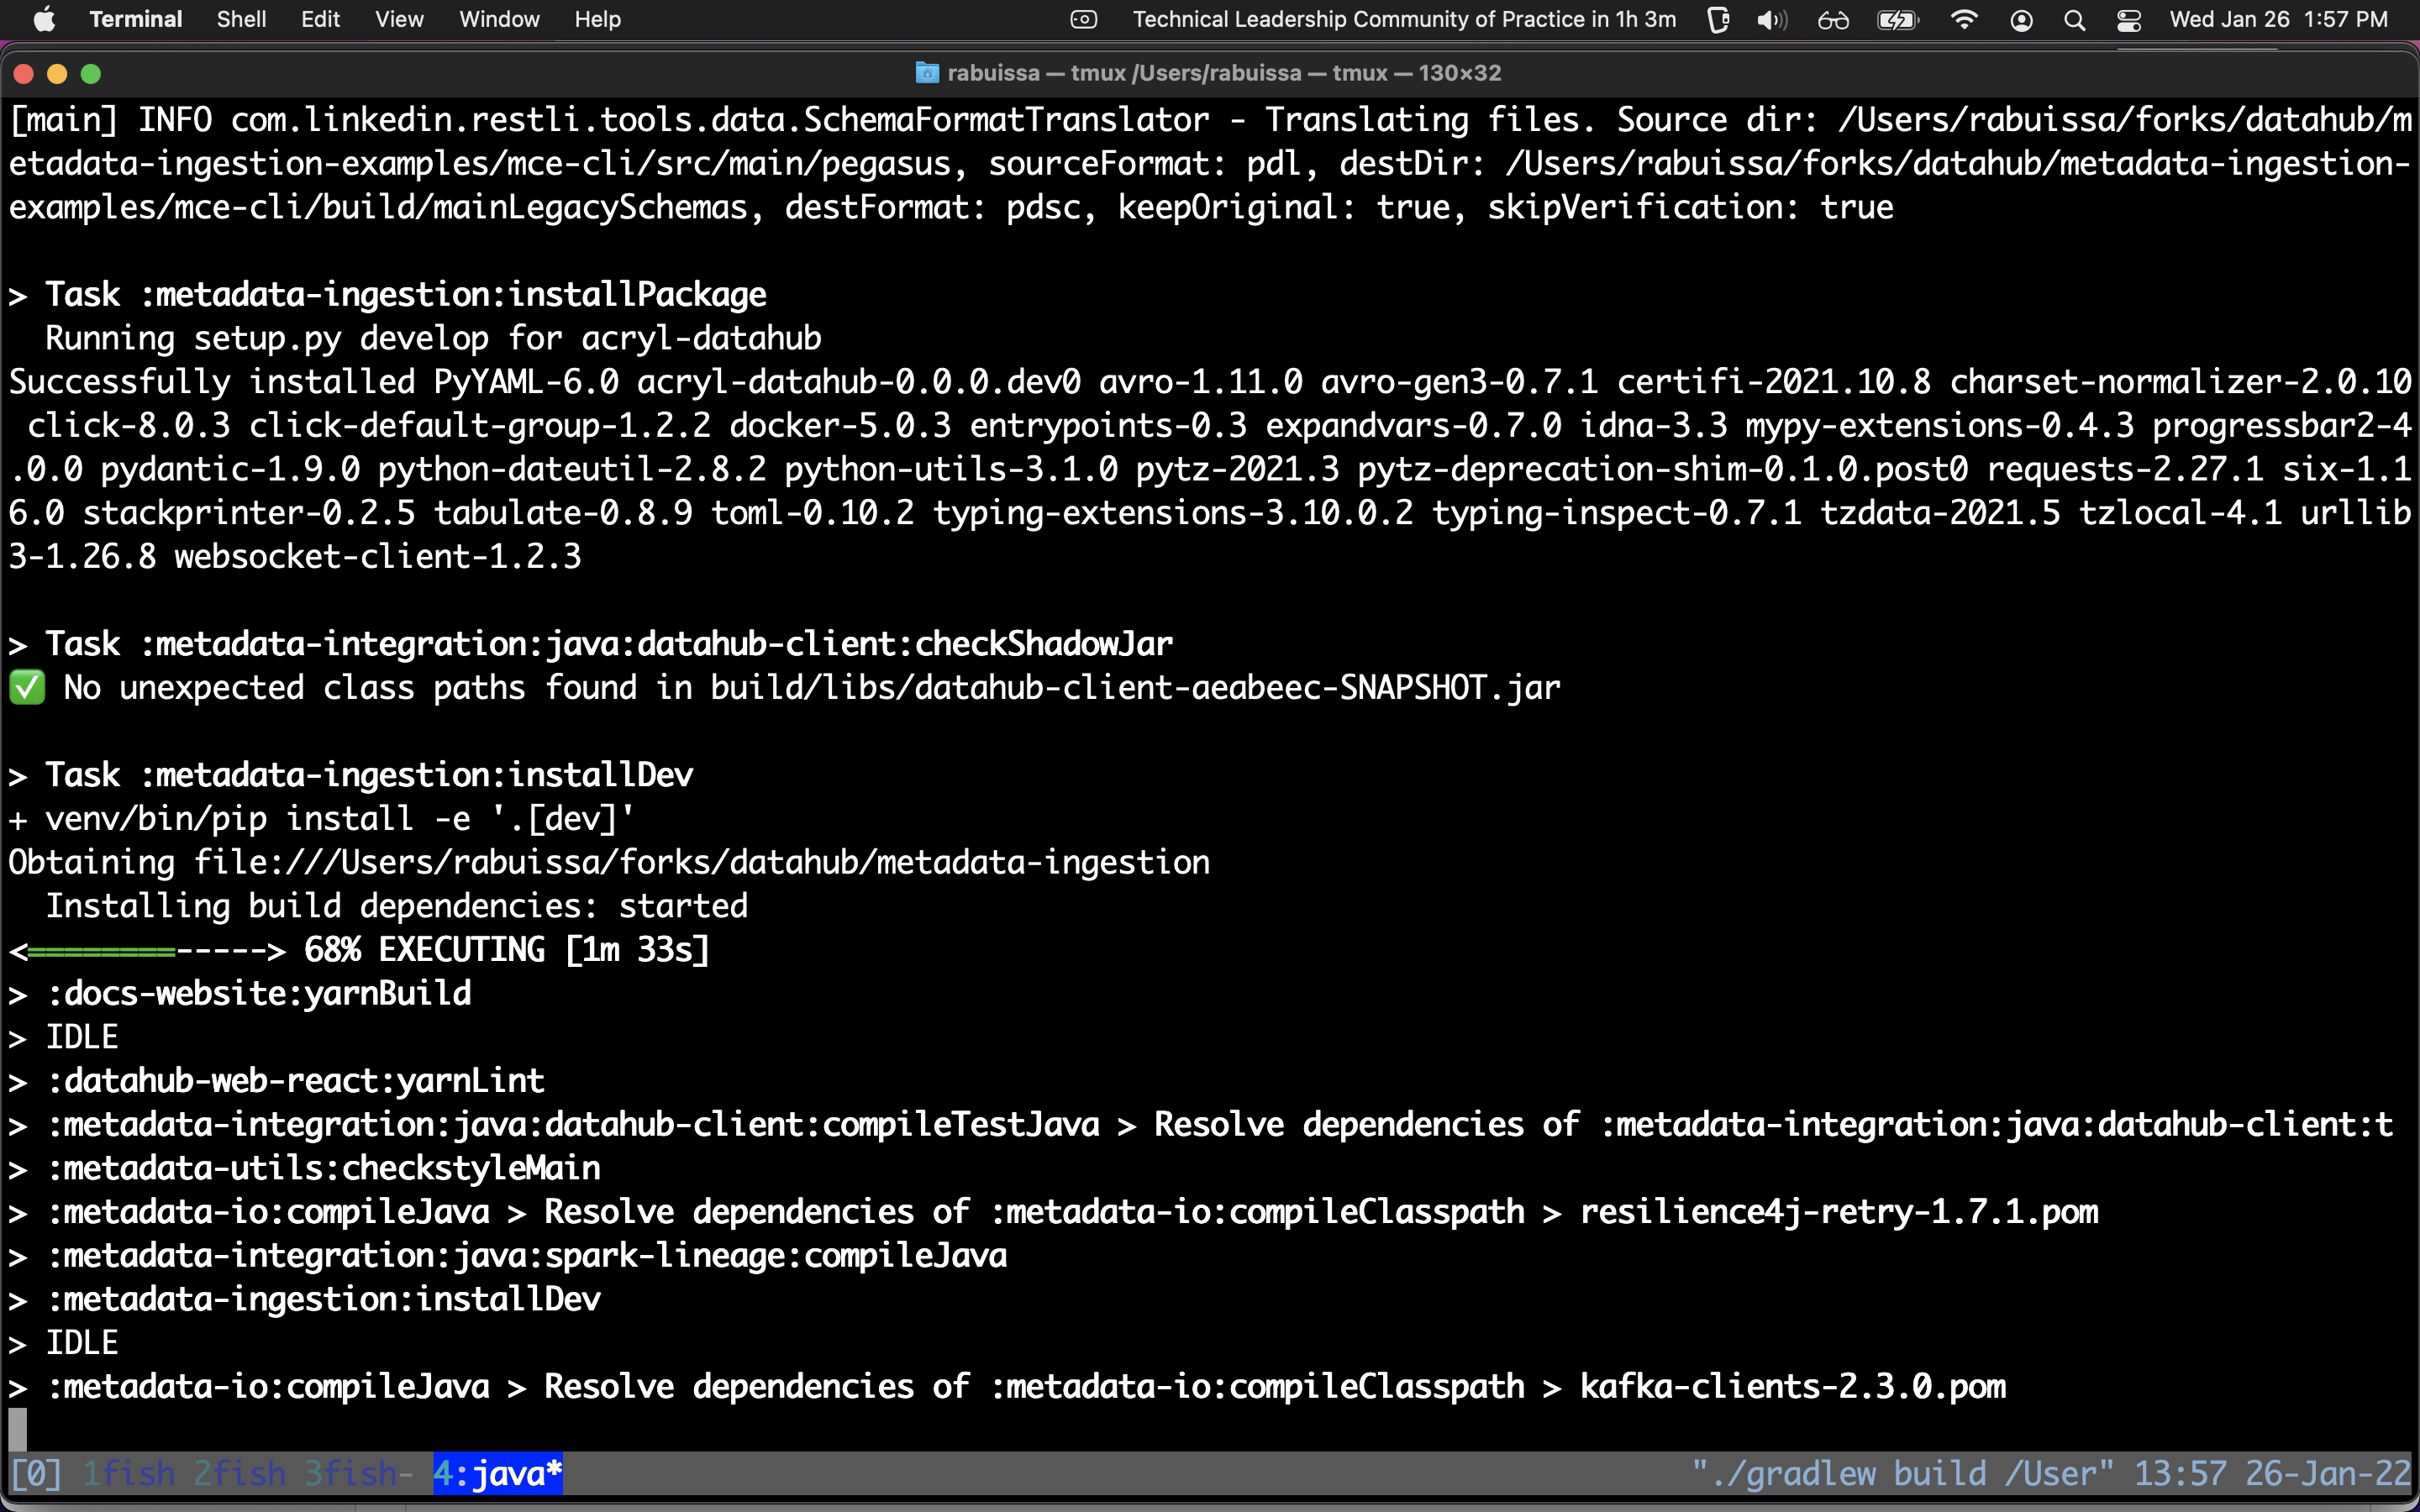 File:Screenshot from gradle build of datahub.png